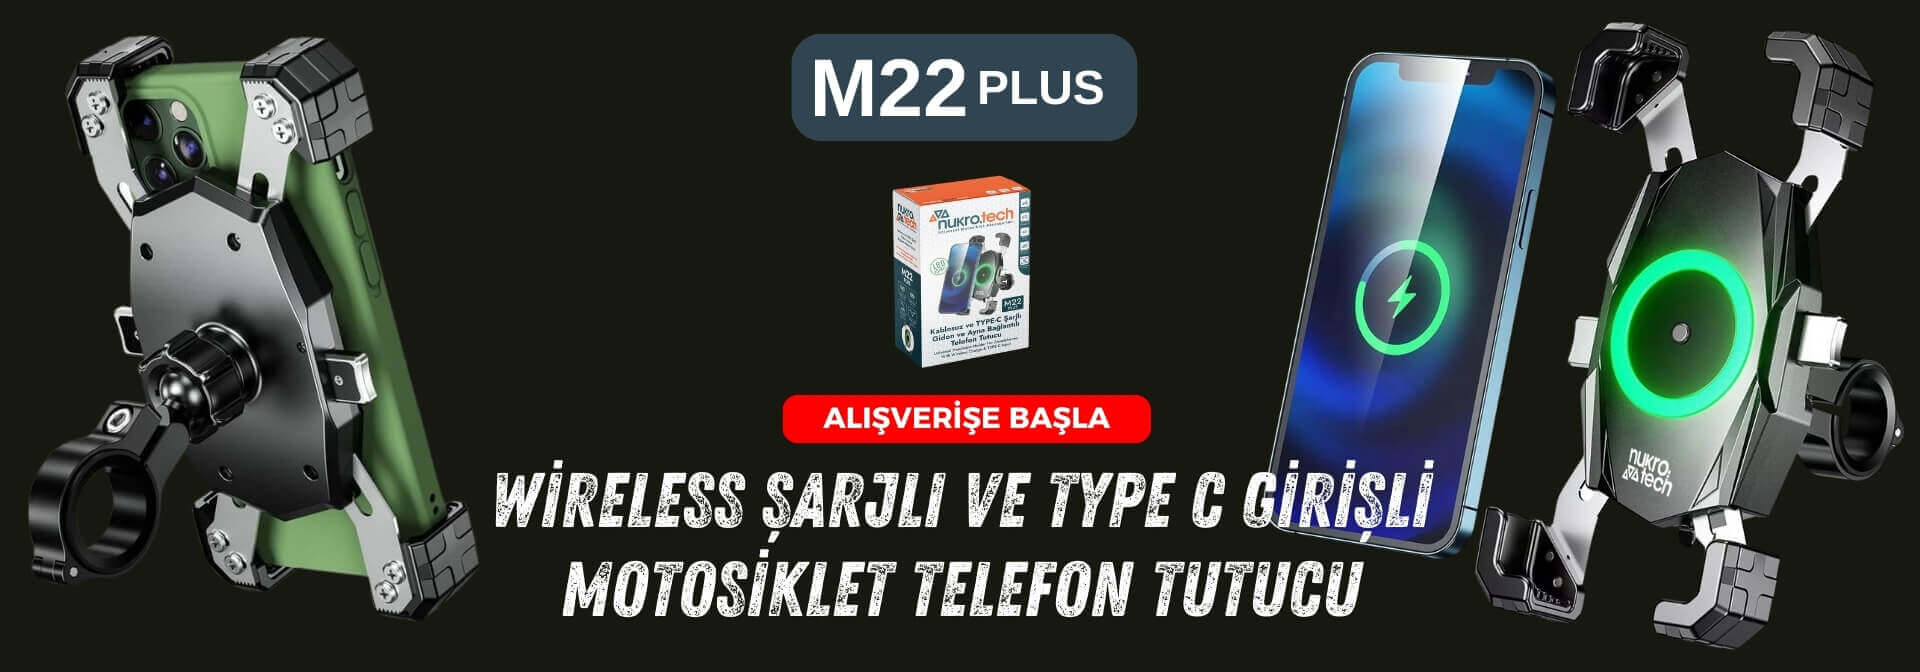 M22 PLUS Wireless Şarjlı ve TYPE C Motosiklet Telefon Tutucu